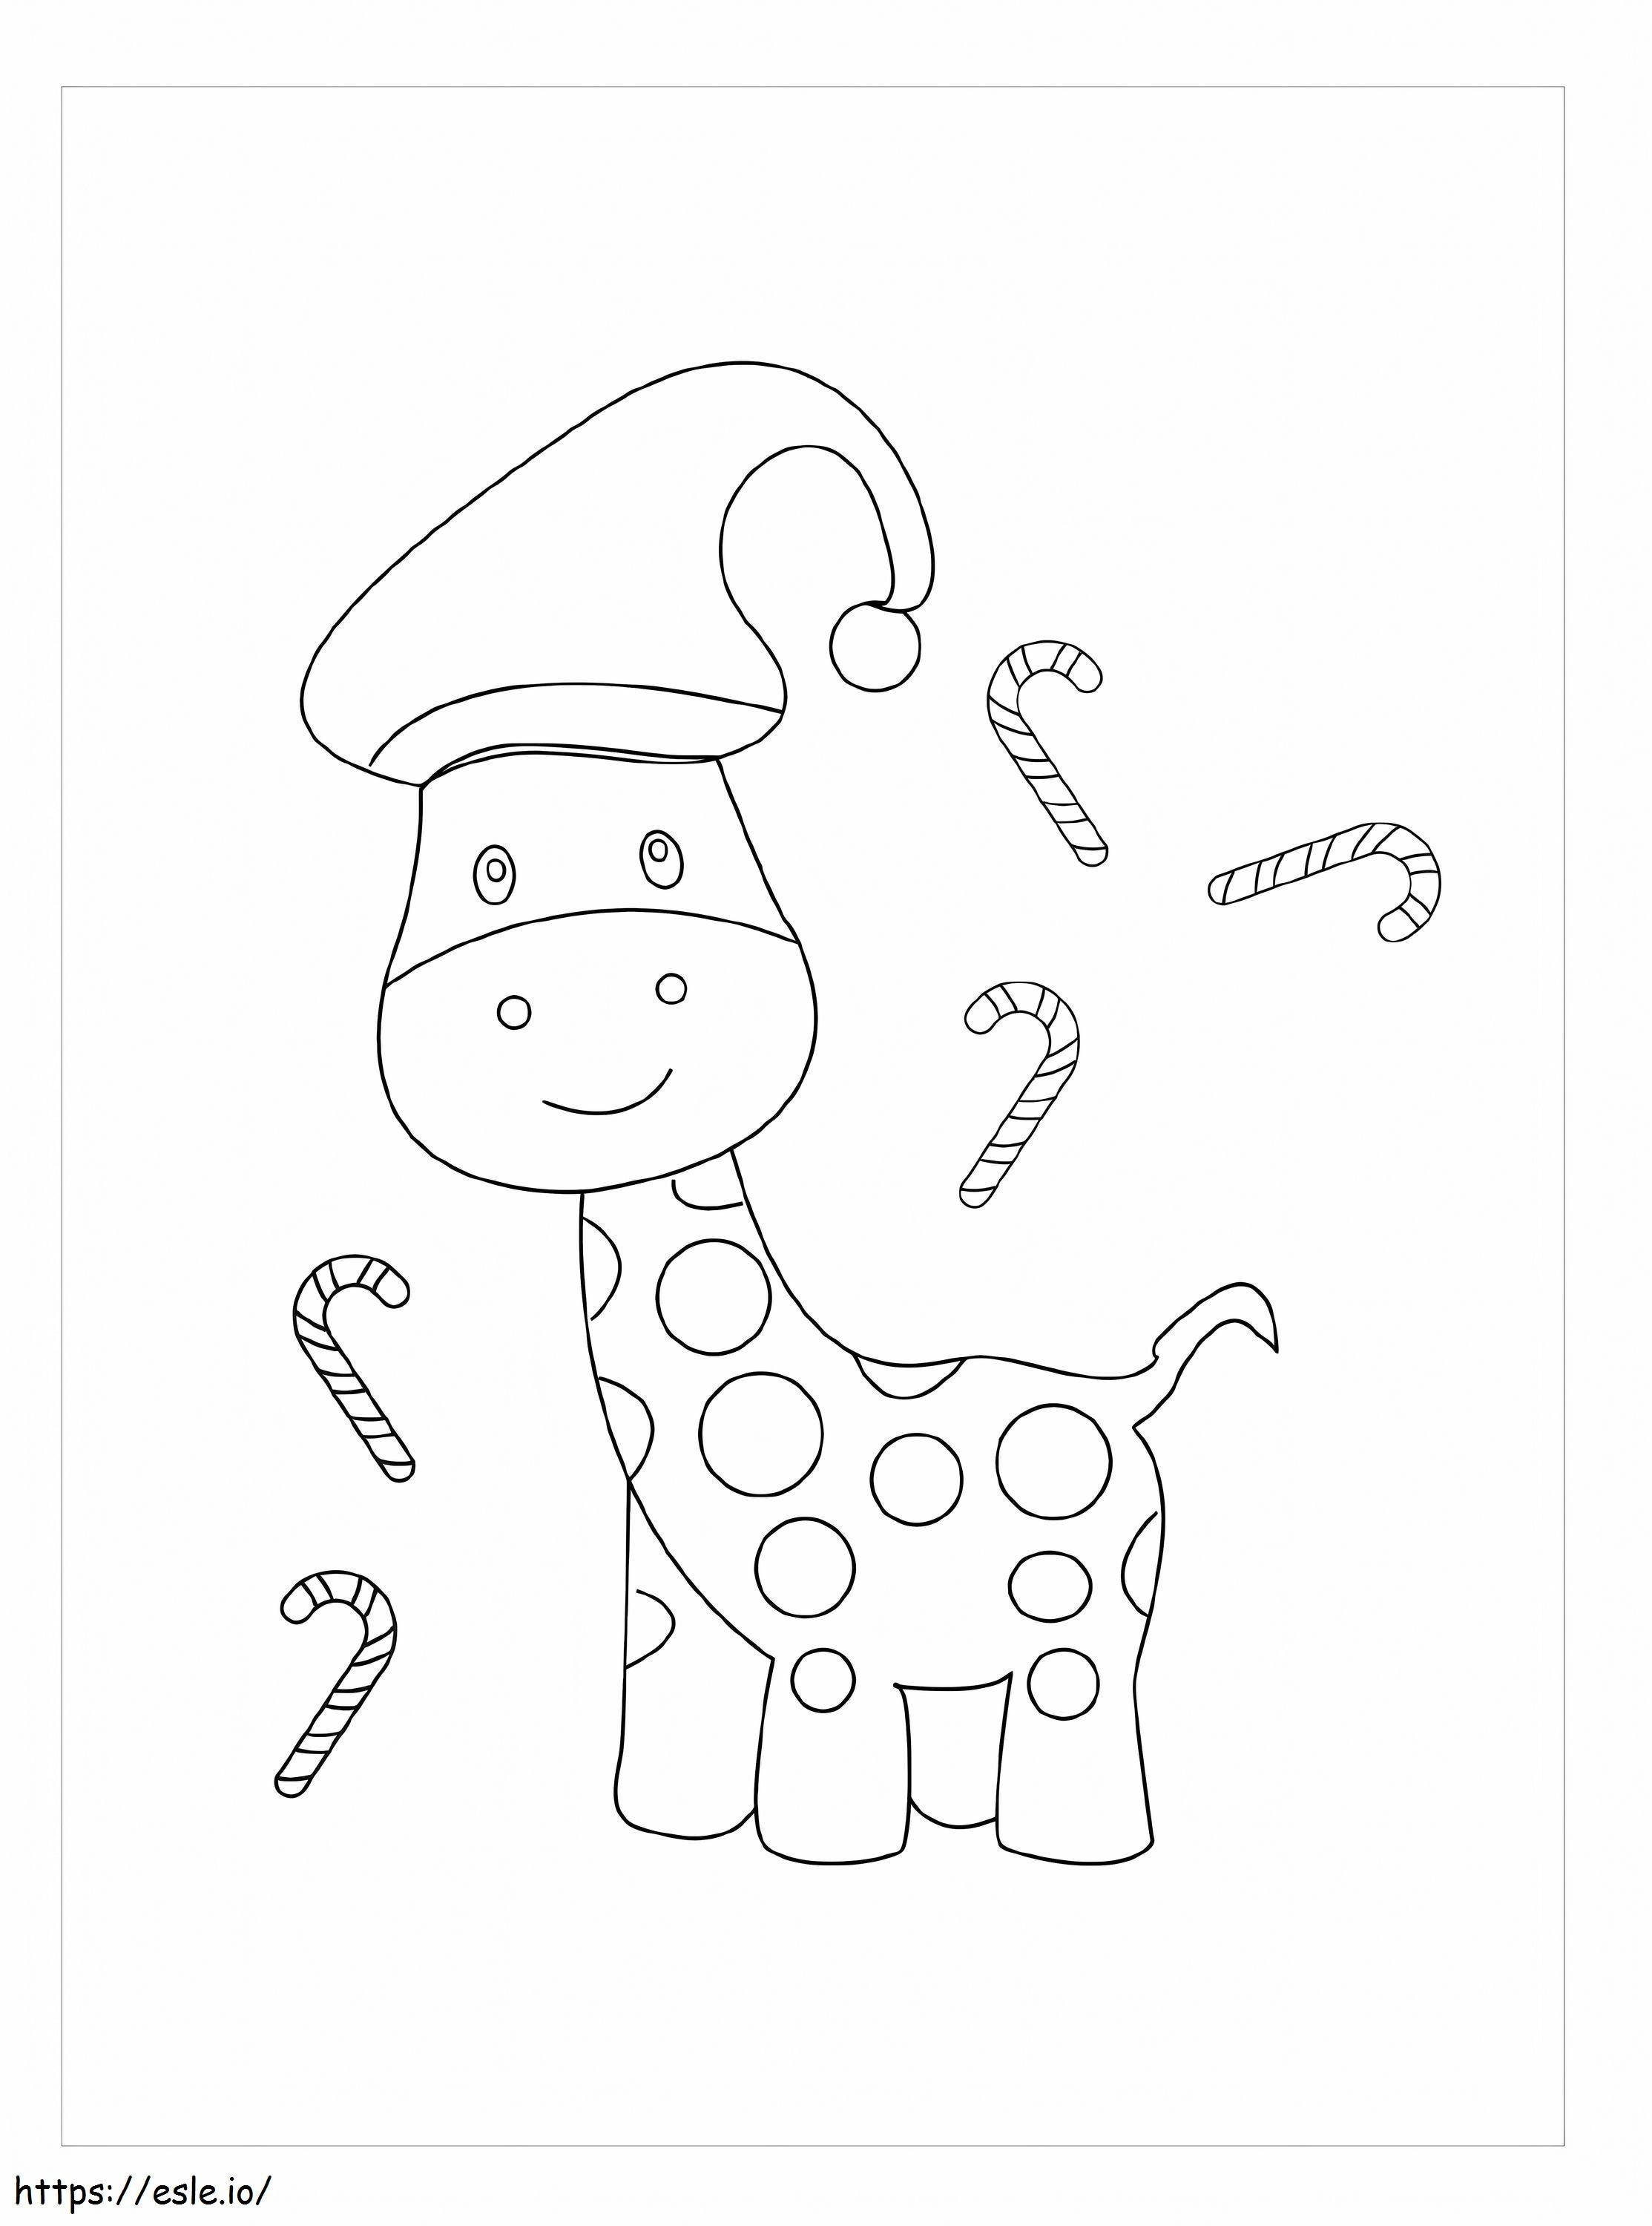 Giraffe At Christmas coloring page